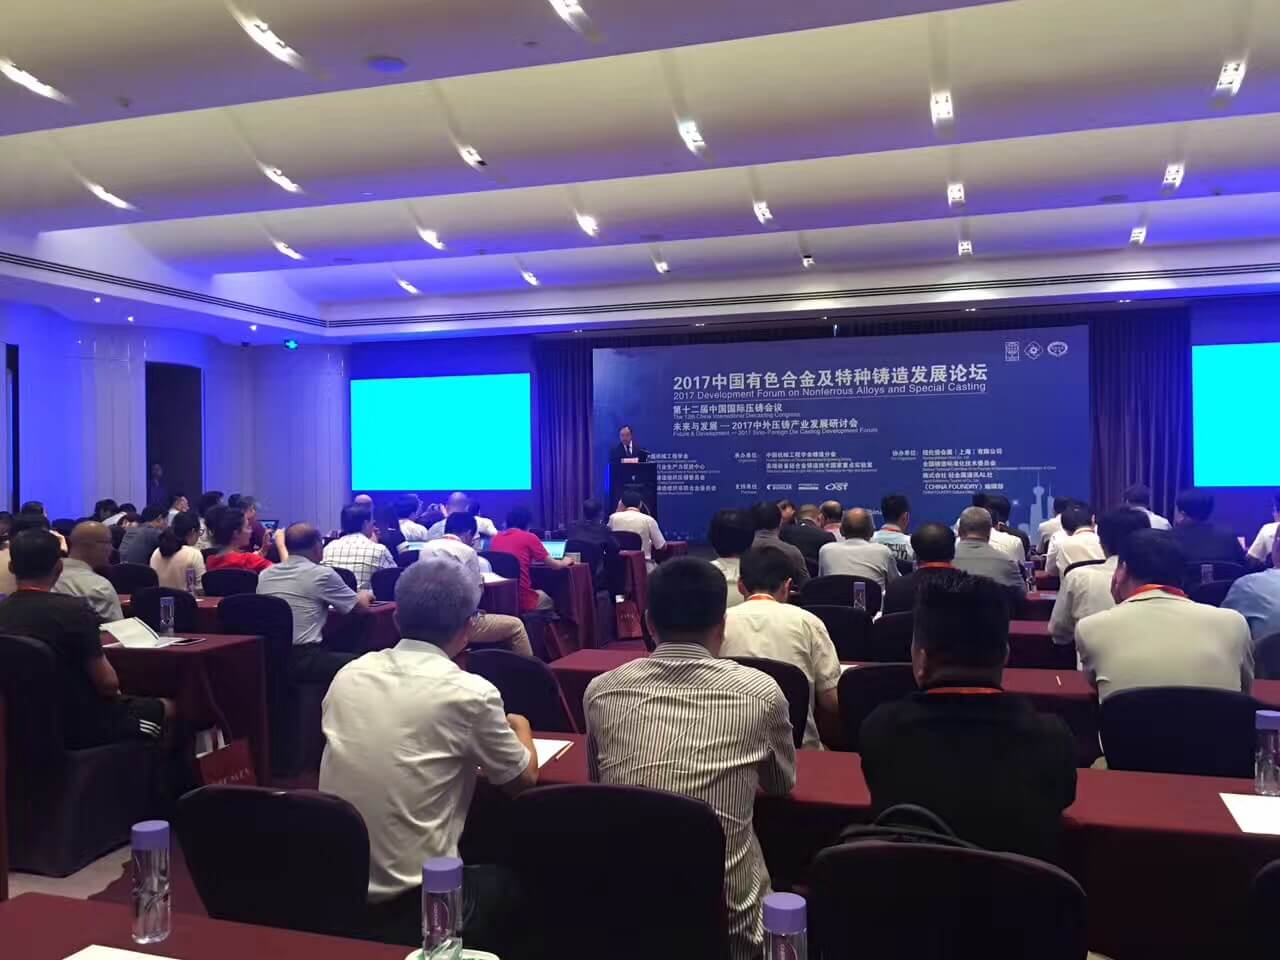 天富平台受邀参加2017中国有色合金及特种铸造论坛